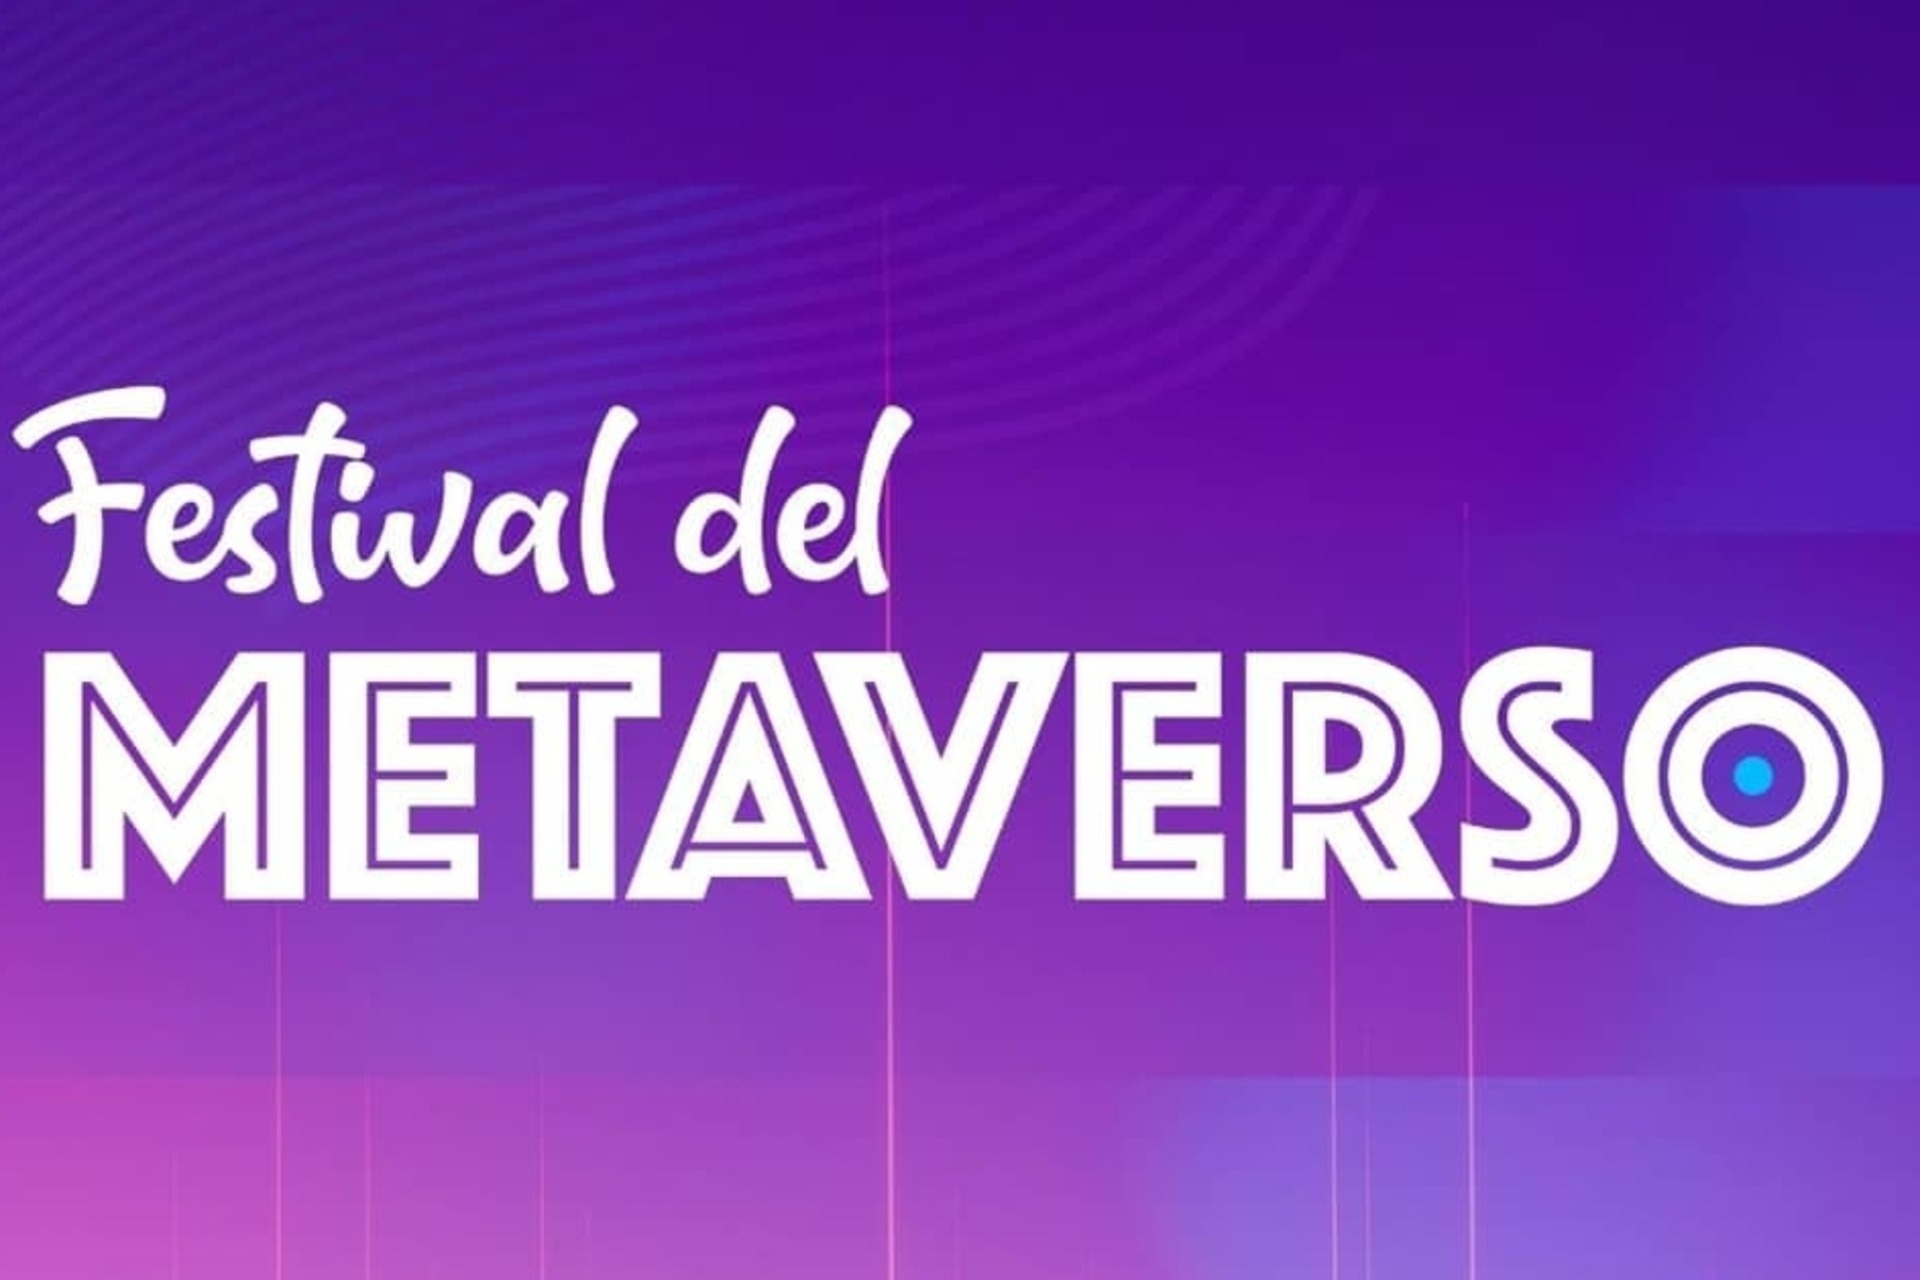 Il logotipo del Festival del Metaverso